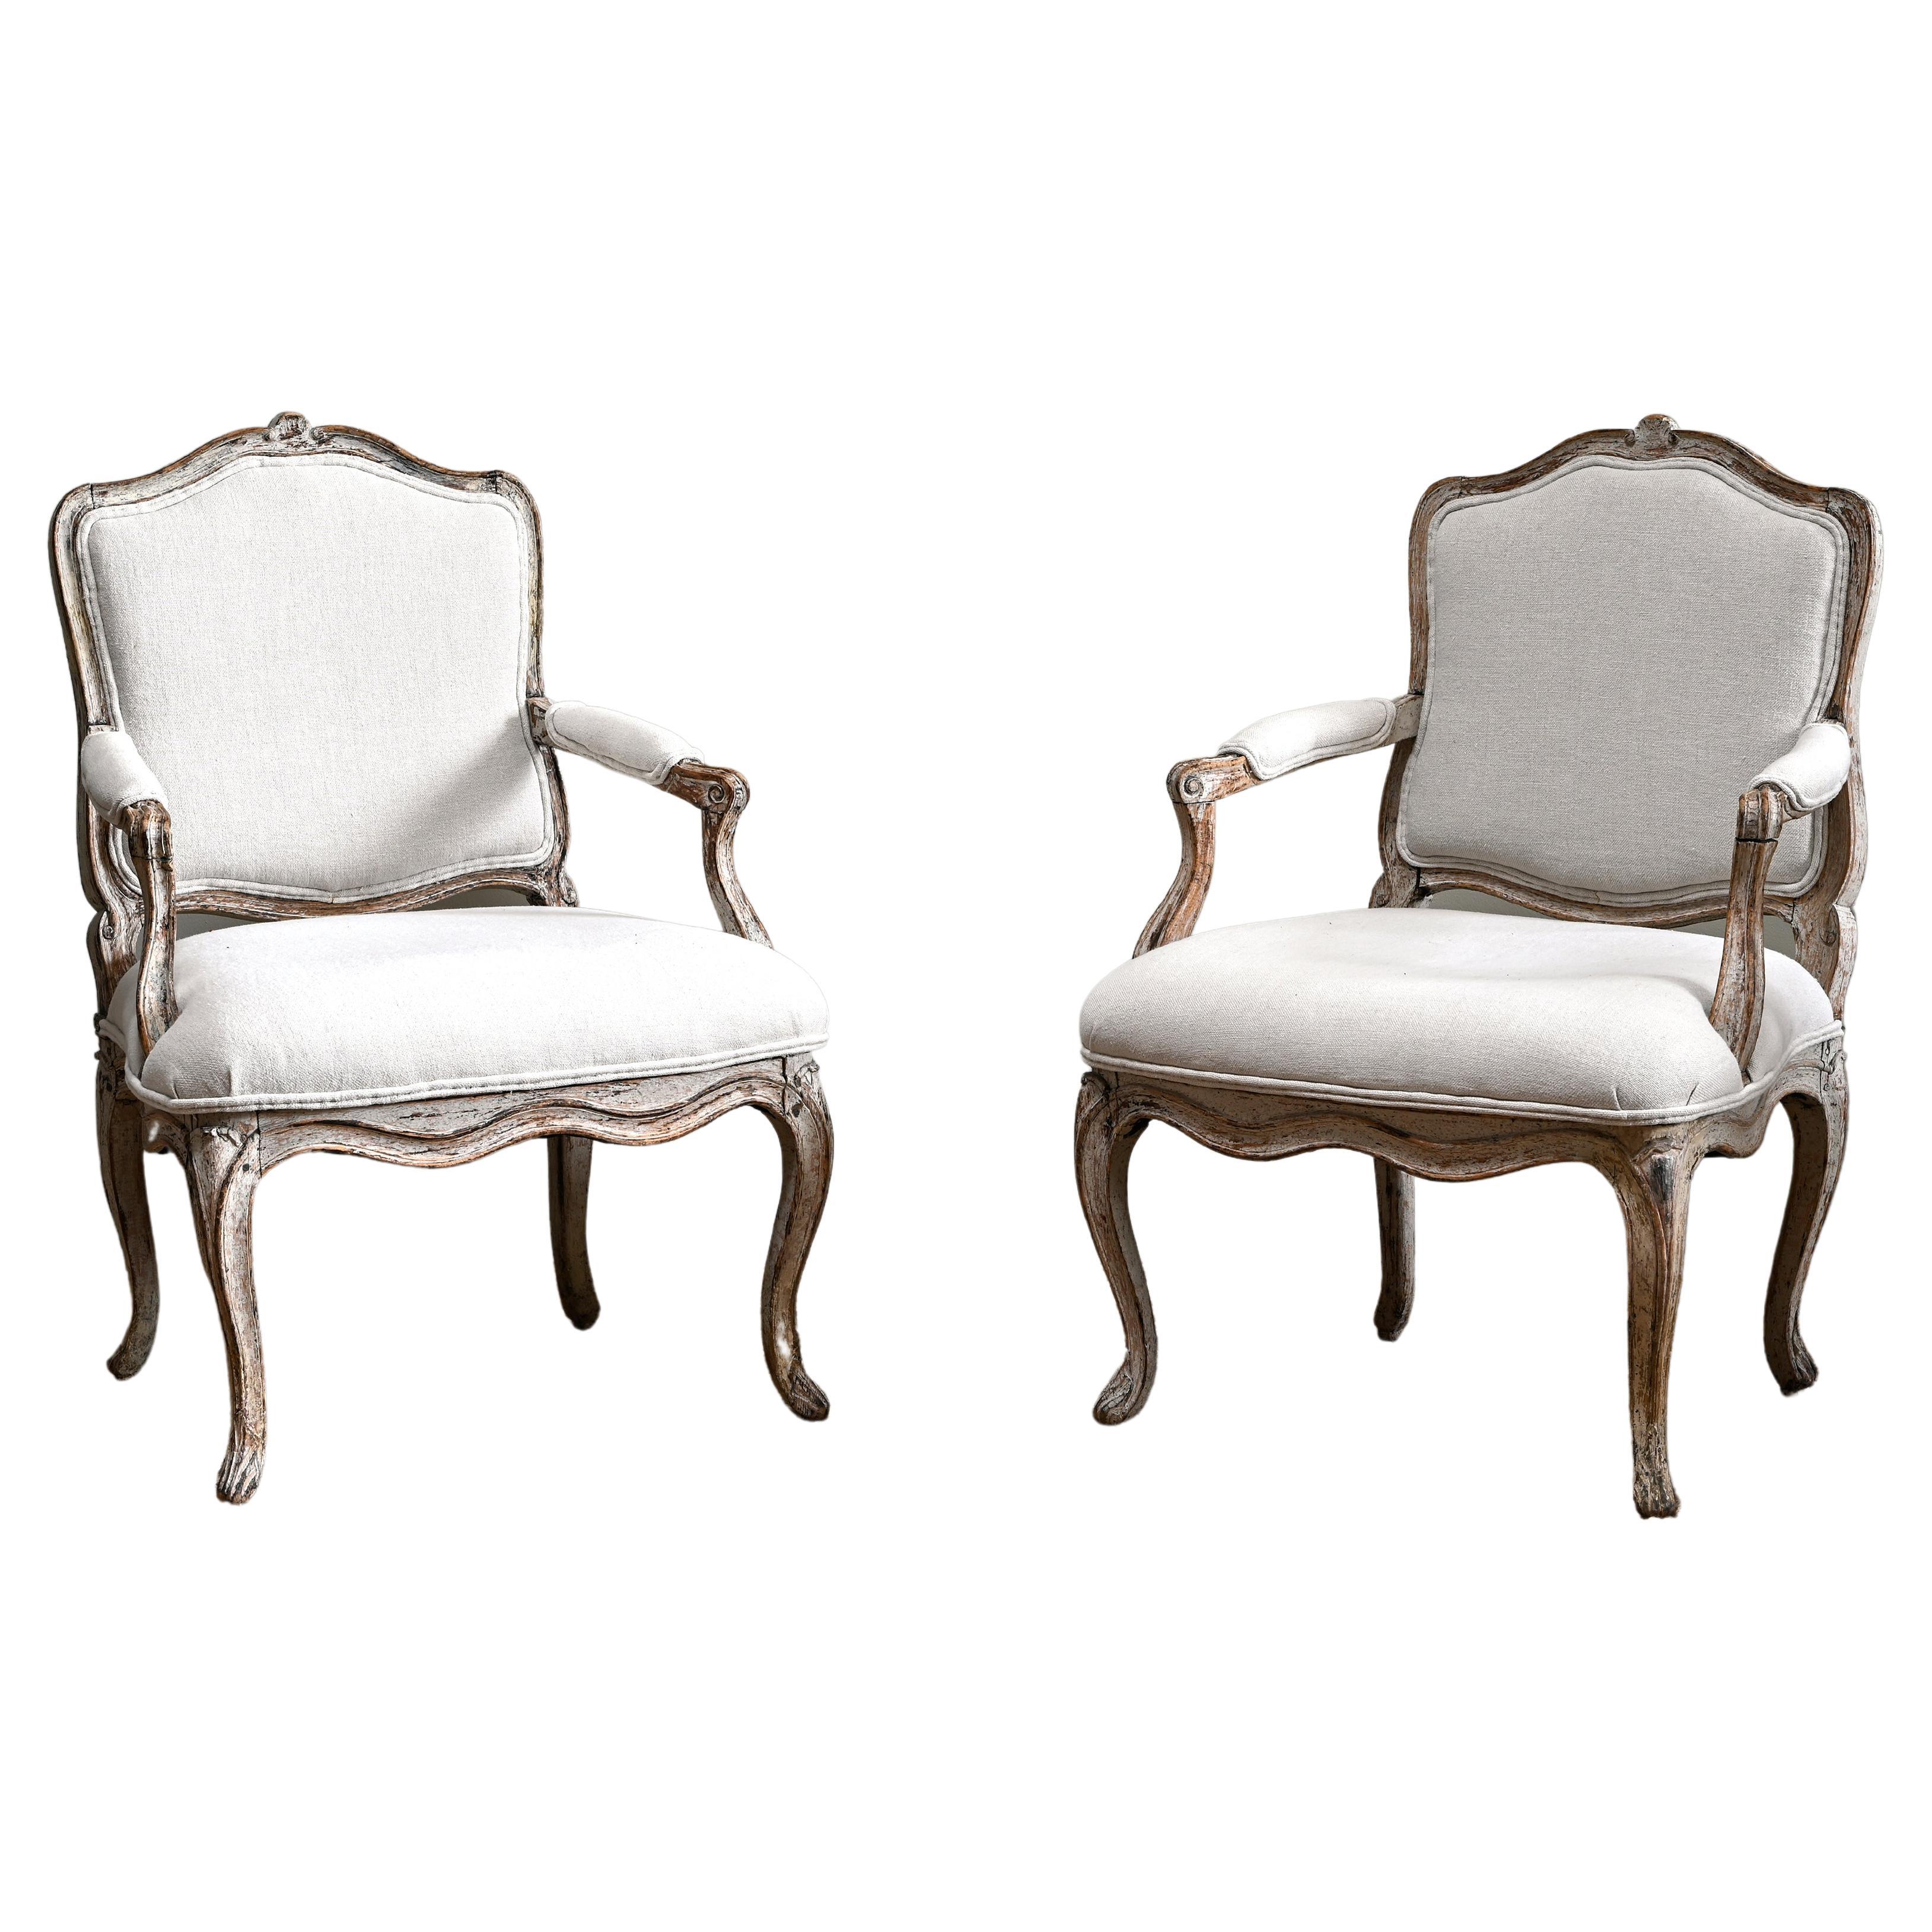 Feines Paar französischer Rokoko-Sessel aus dem 18. Jahrhundert